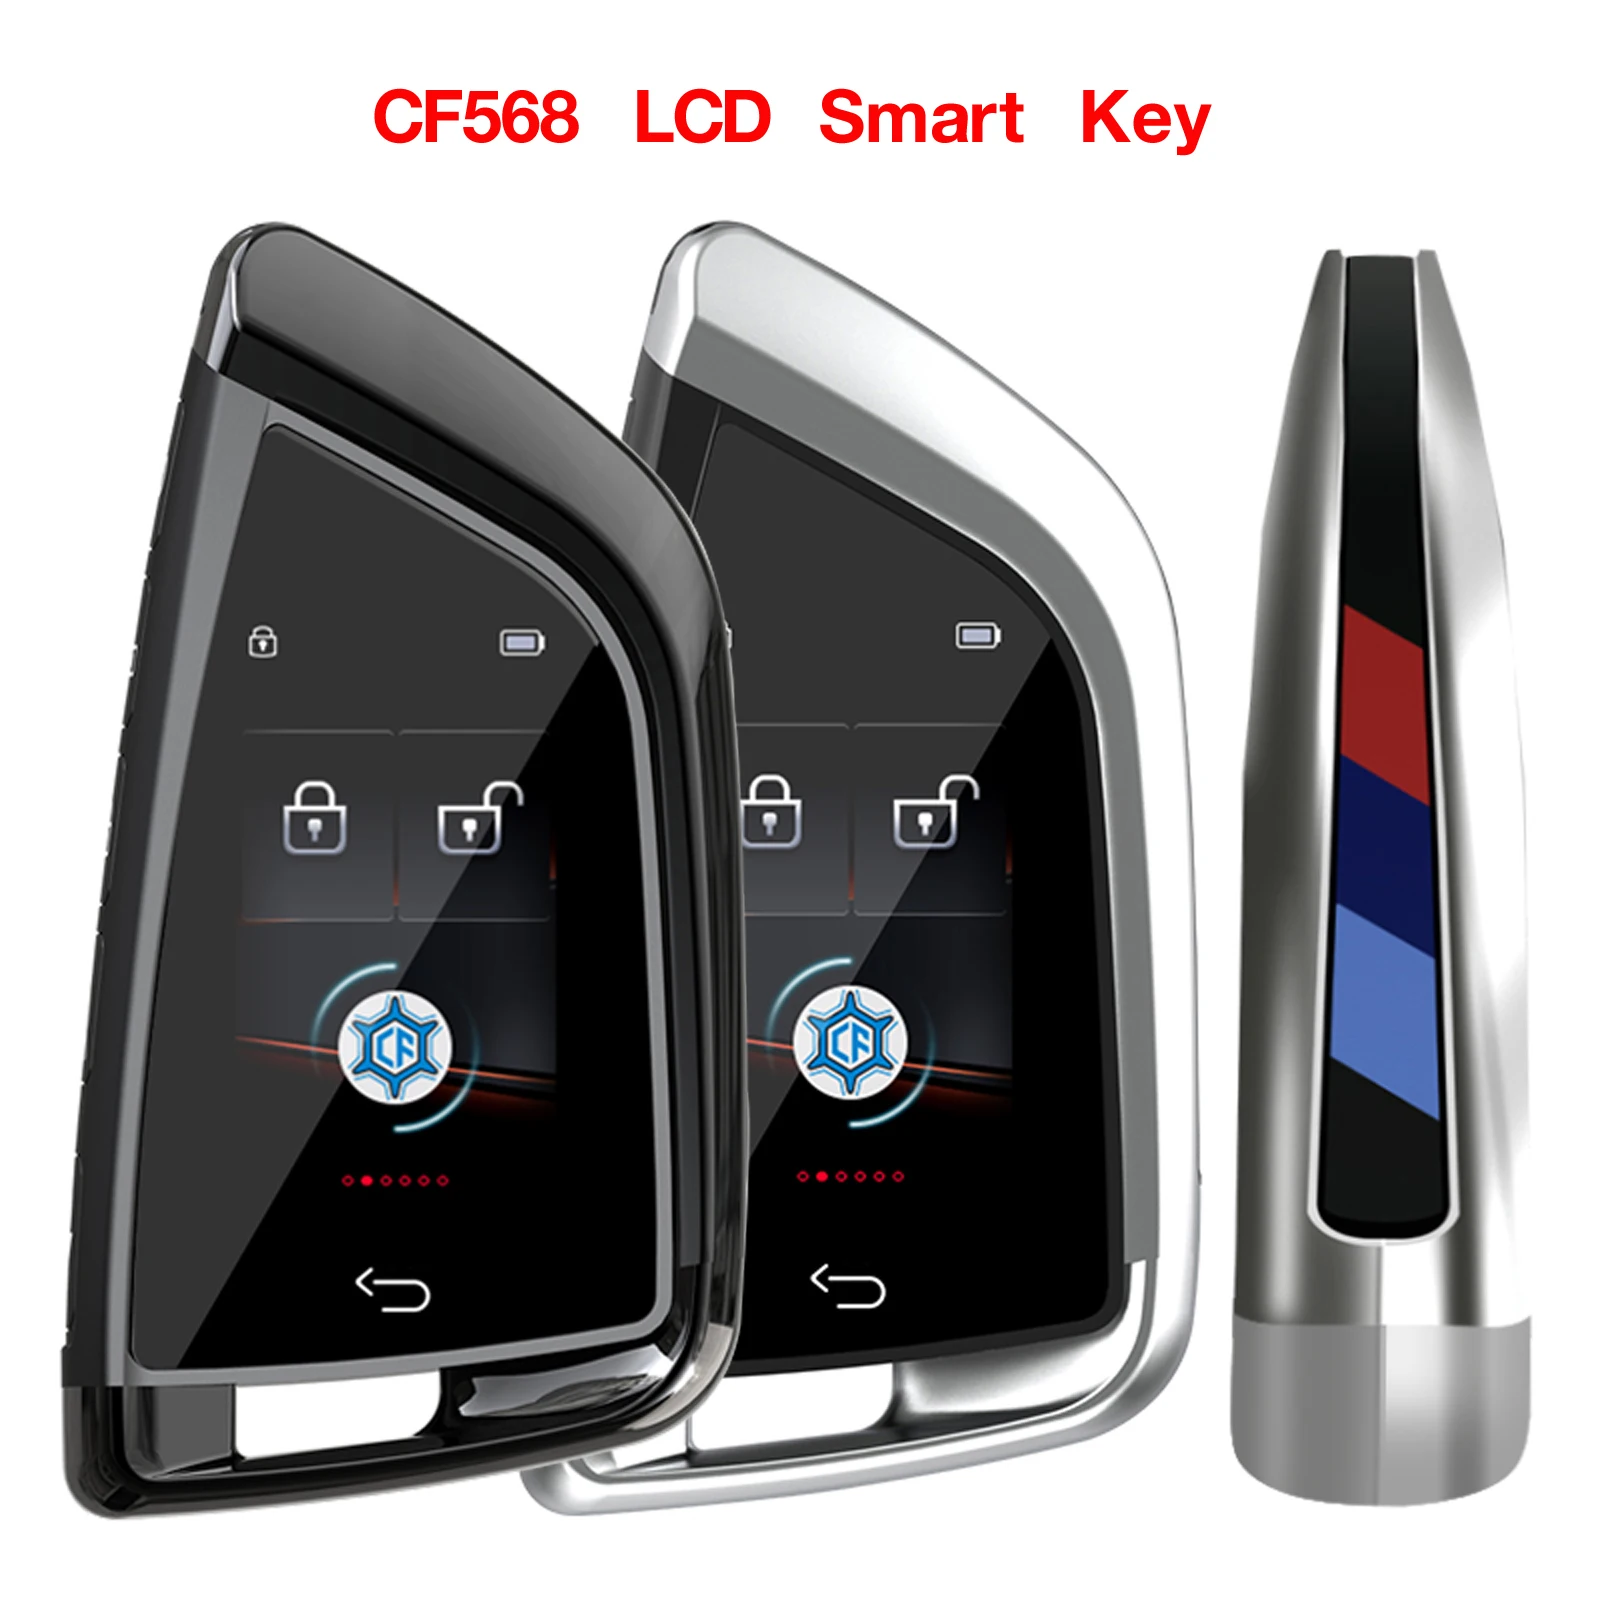 Jingyuqin-llave inteligente Universal LCD modificada para BMW, Kia, Benz, Ford, entrada sin llave, cerradura de puerta automática, CF568, en inglés